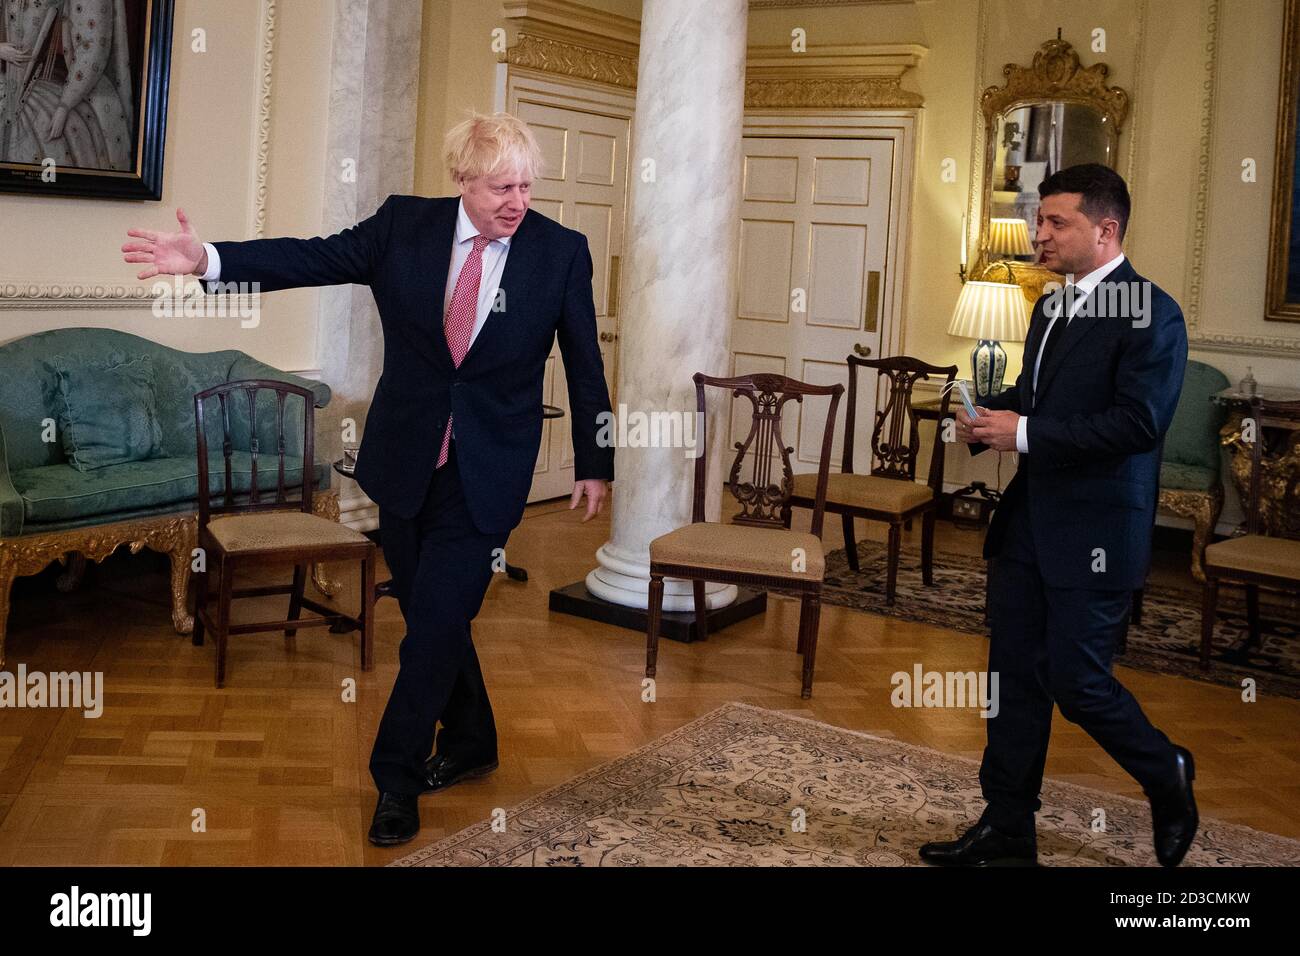 El primer ministro Boris Johnson da la bienvenida al presidente de Ucrania, Volodymyr Zelenskyy, a Downing Street, Londres, antes de una reunión para firmar un acuerdo de asociación estratégica con el presidente frente al "comportamiento desestabilizante" de Rusia hacia el país. Foto de stock